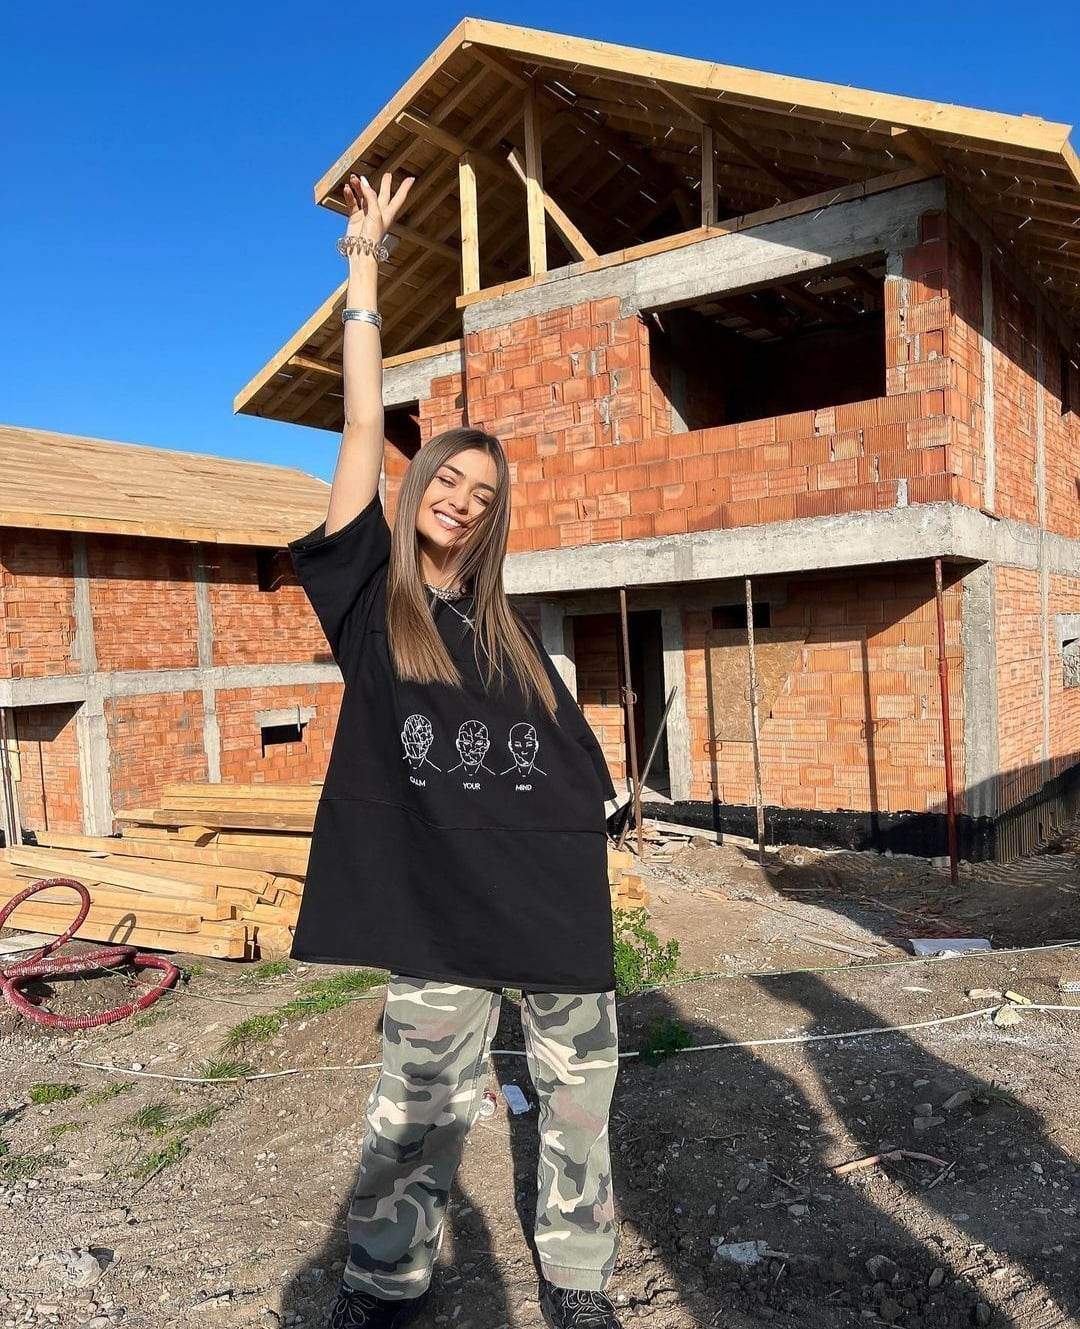 Iuliana Beregoi, primele imagini din casa pe care și-a luat-o recent. Cântăreața s-a mutat în propria locuință la 18 ani: ”Cam așa...” / FOTO